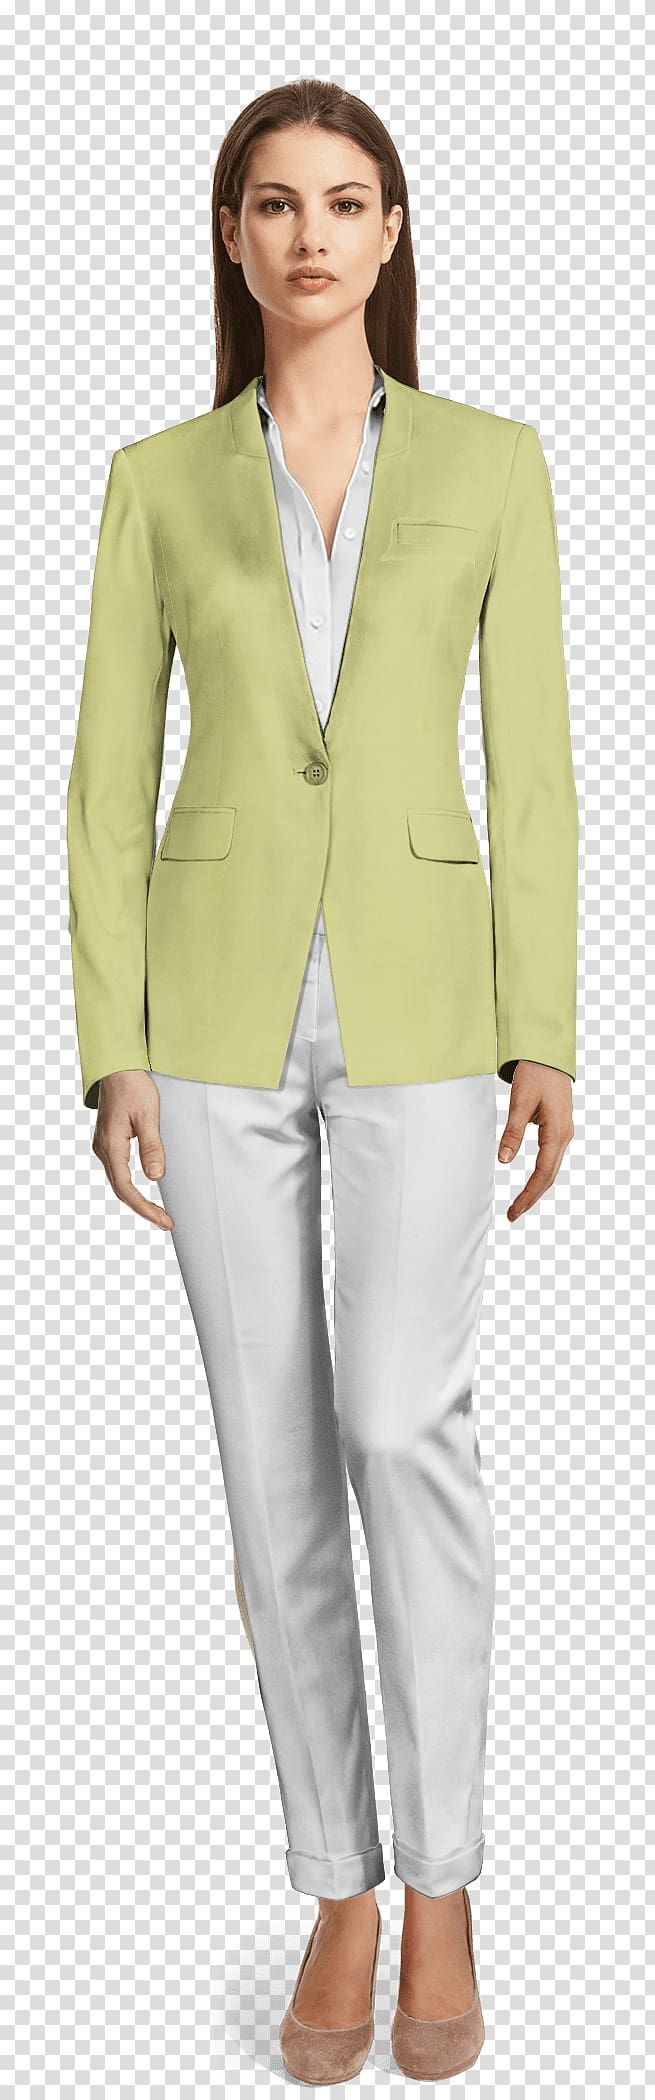 Jakkupuku Suit Pants Skirt Clothing, suit transparent background PNG clipart